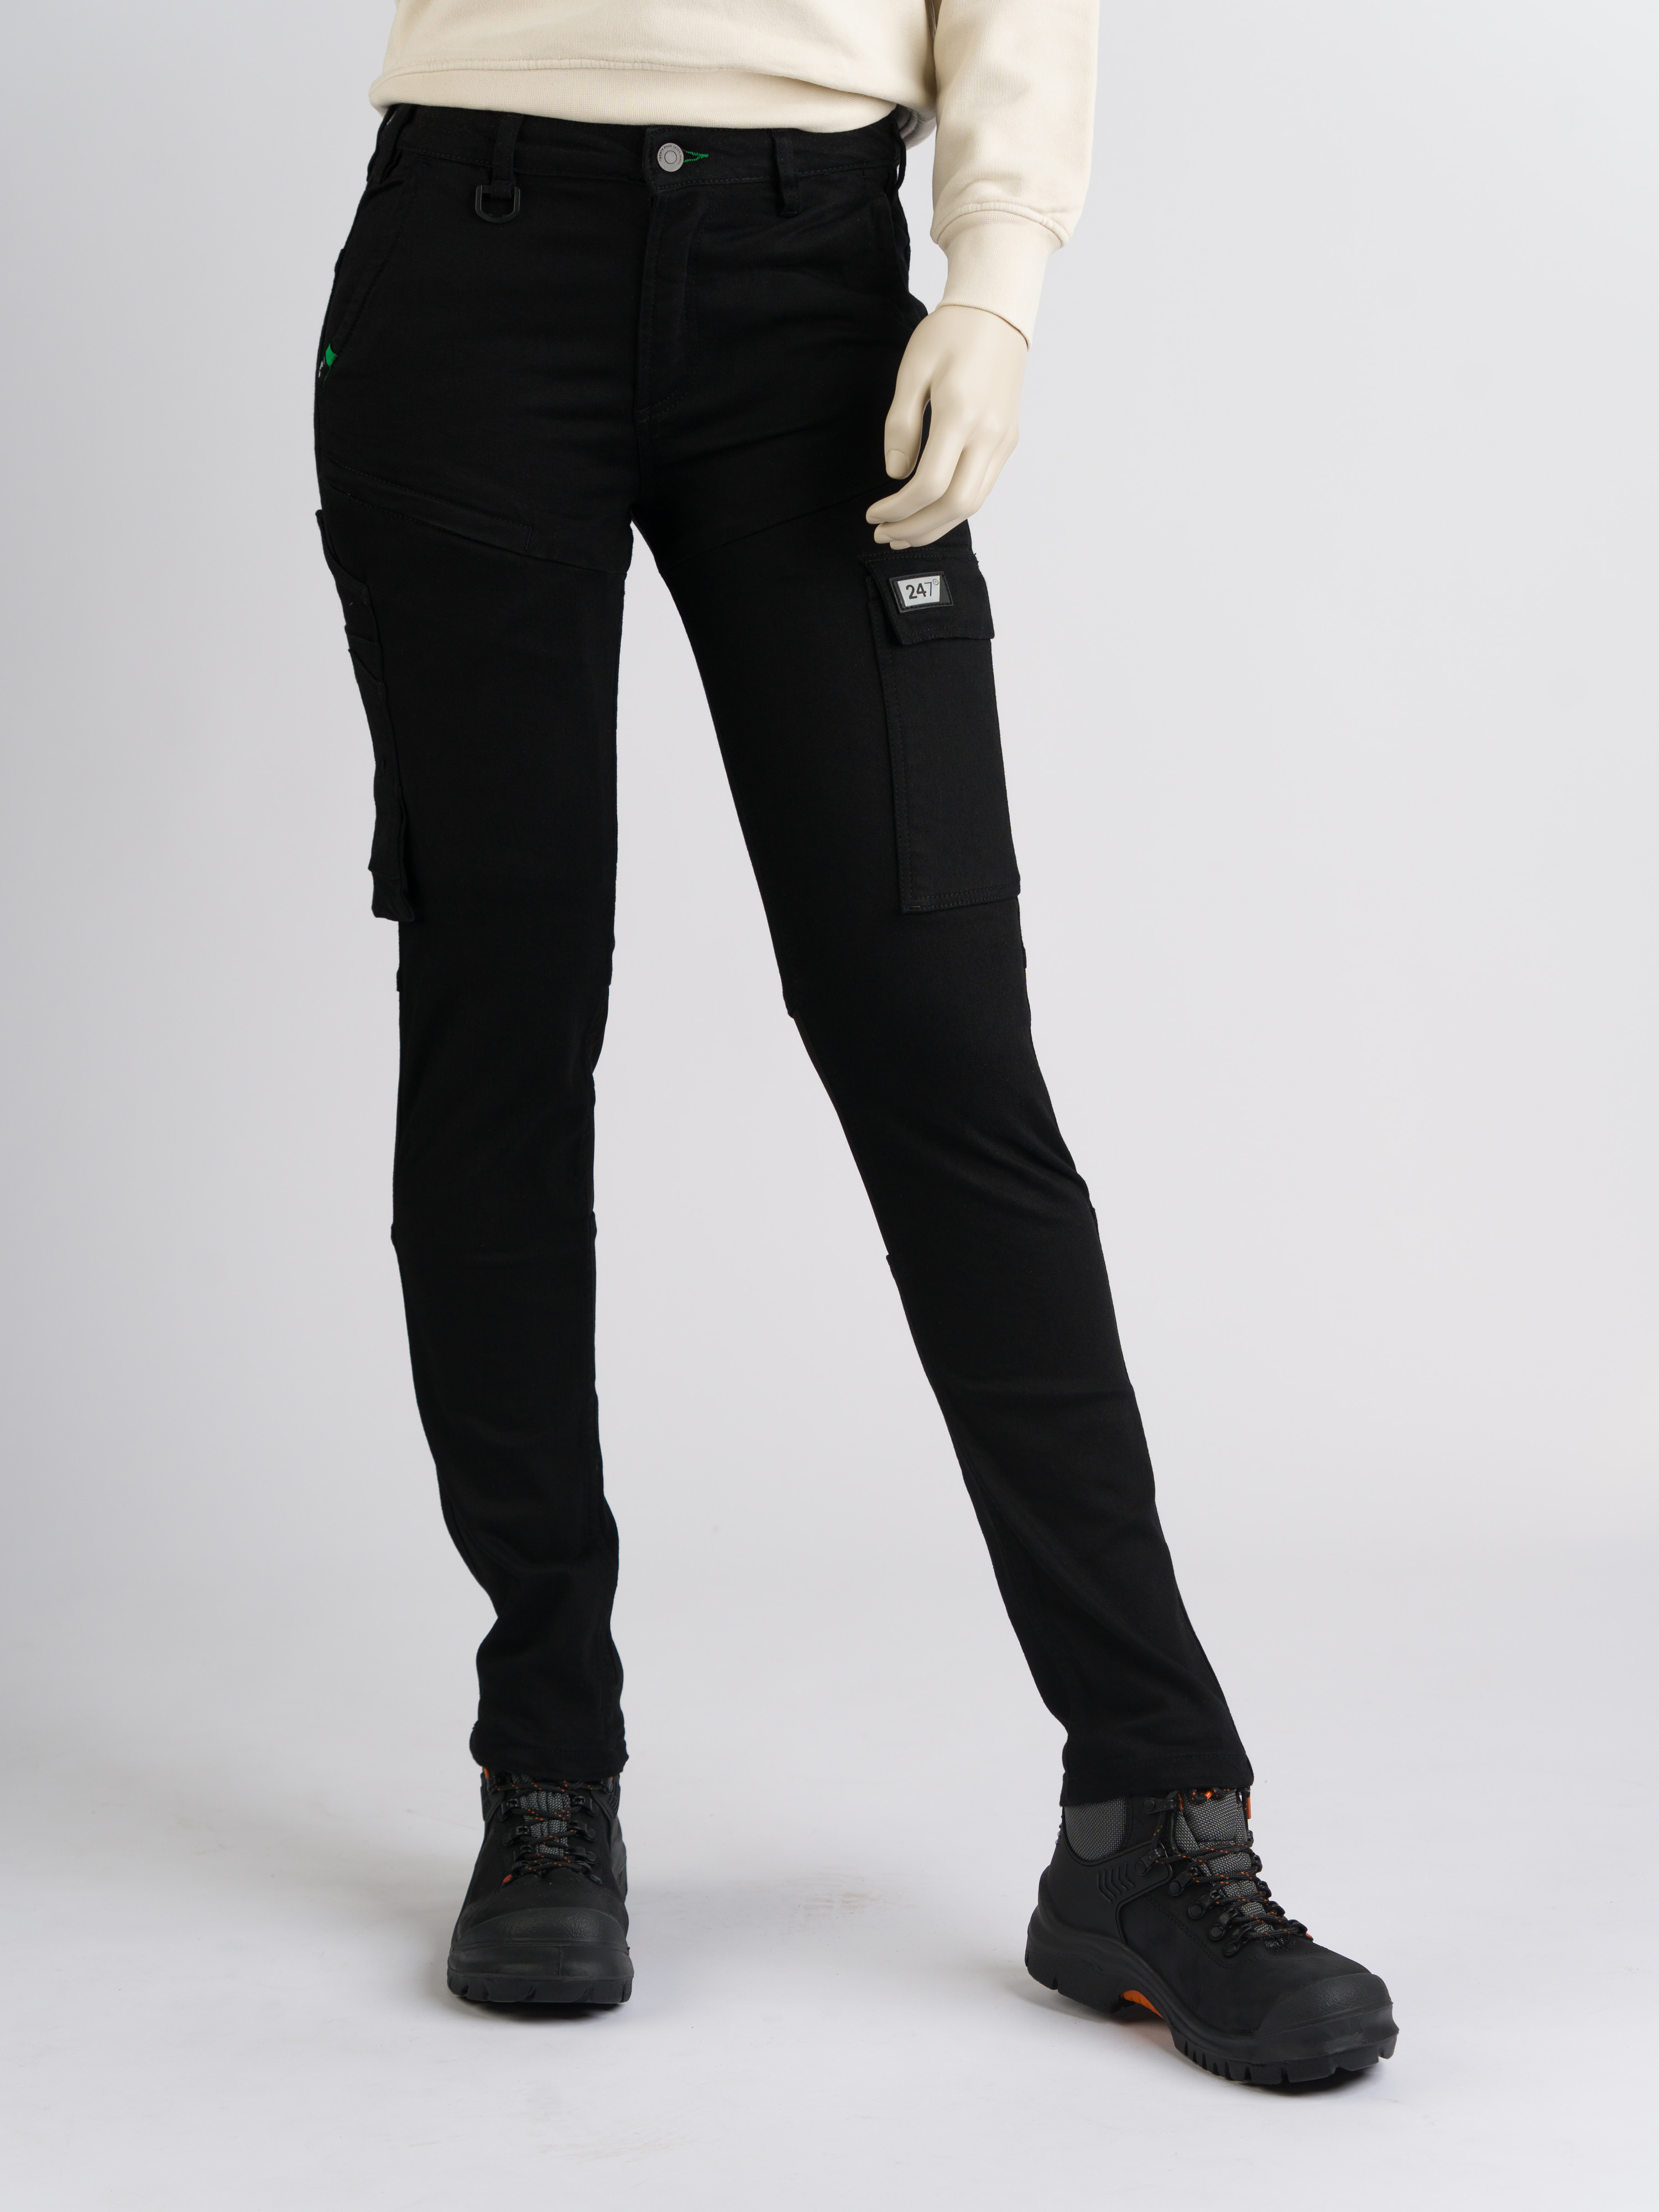 247Jeans Panda Workwear W22 Black Denim Used